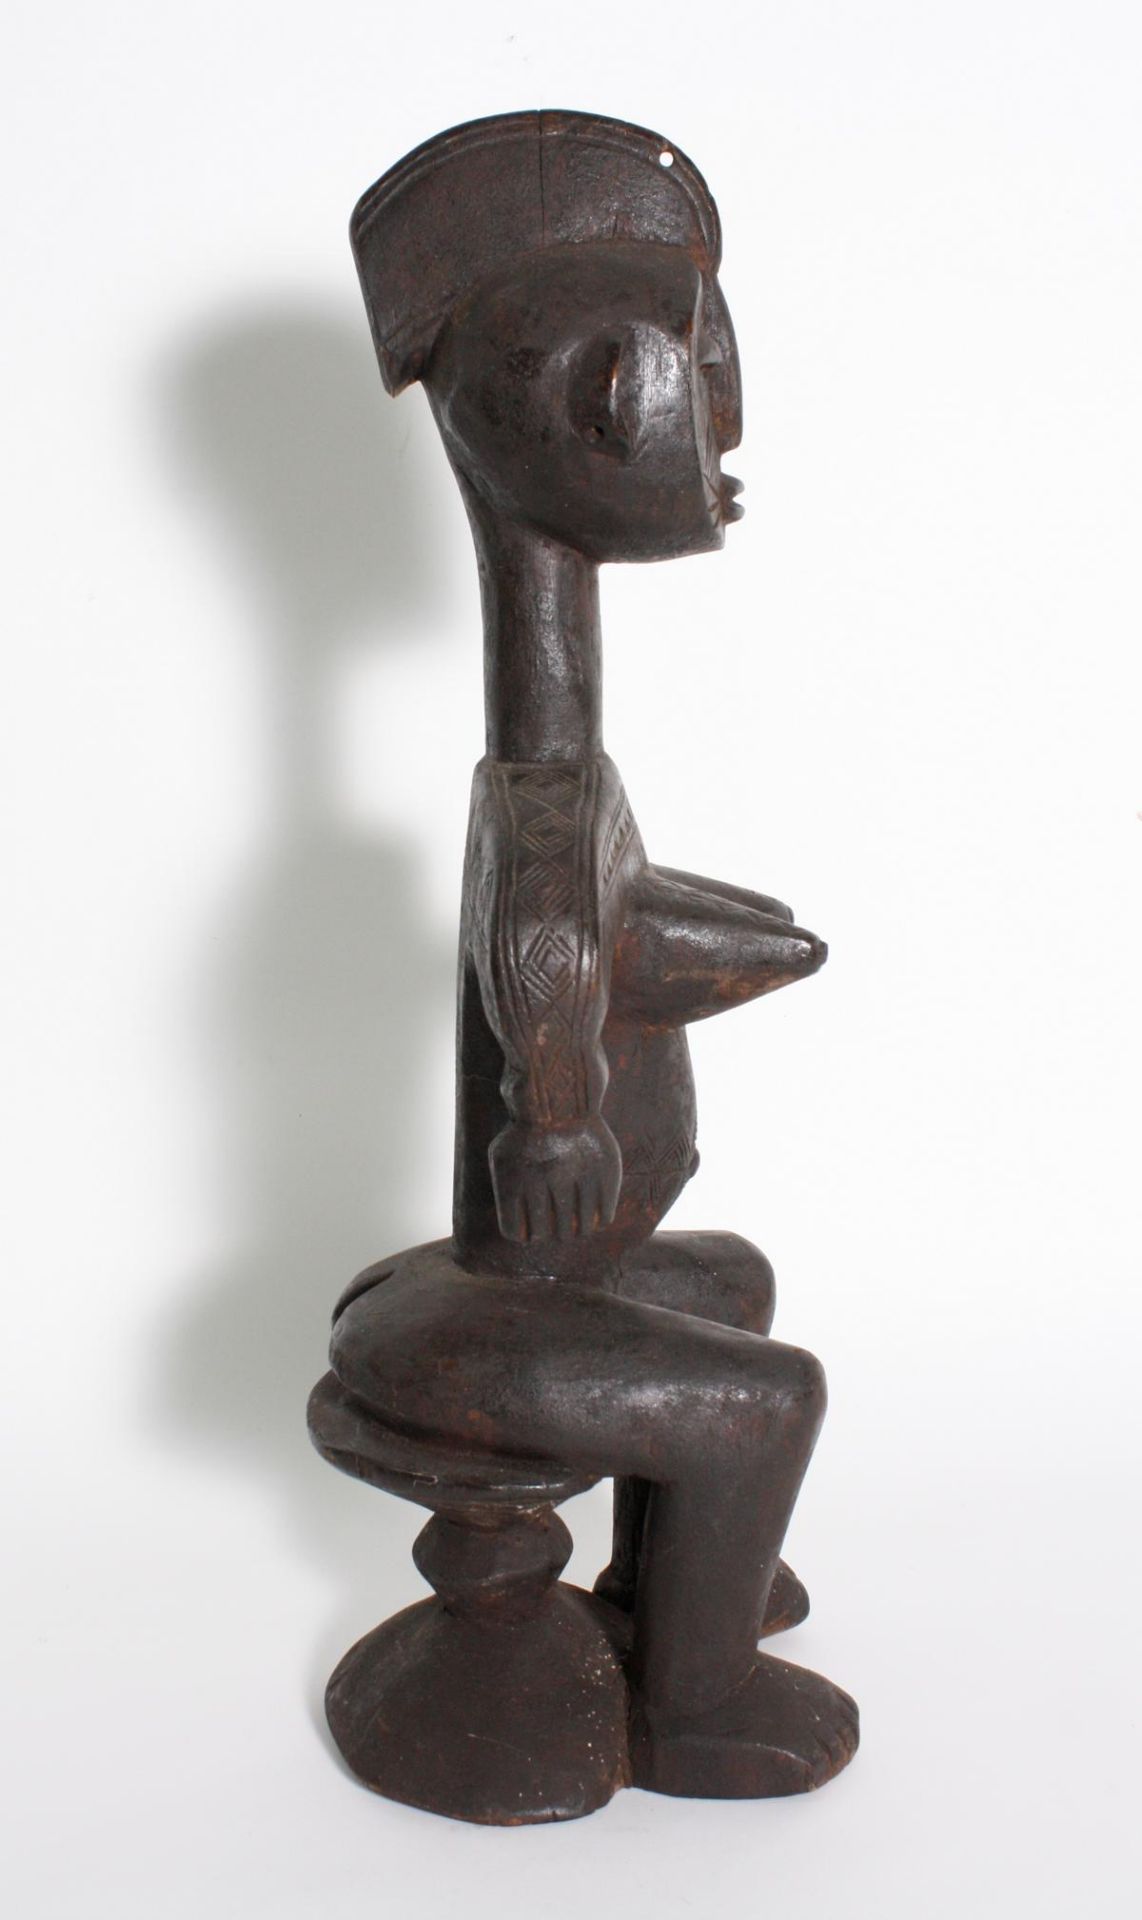 Sitzende weibliche Figur, Bambara, Mali, 1. Hälfte 20. Jh.Holz, geschnitzt. Dunkler krustiger - Bild 4 aus 6